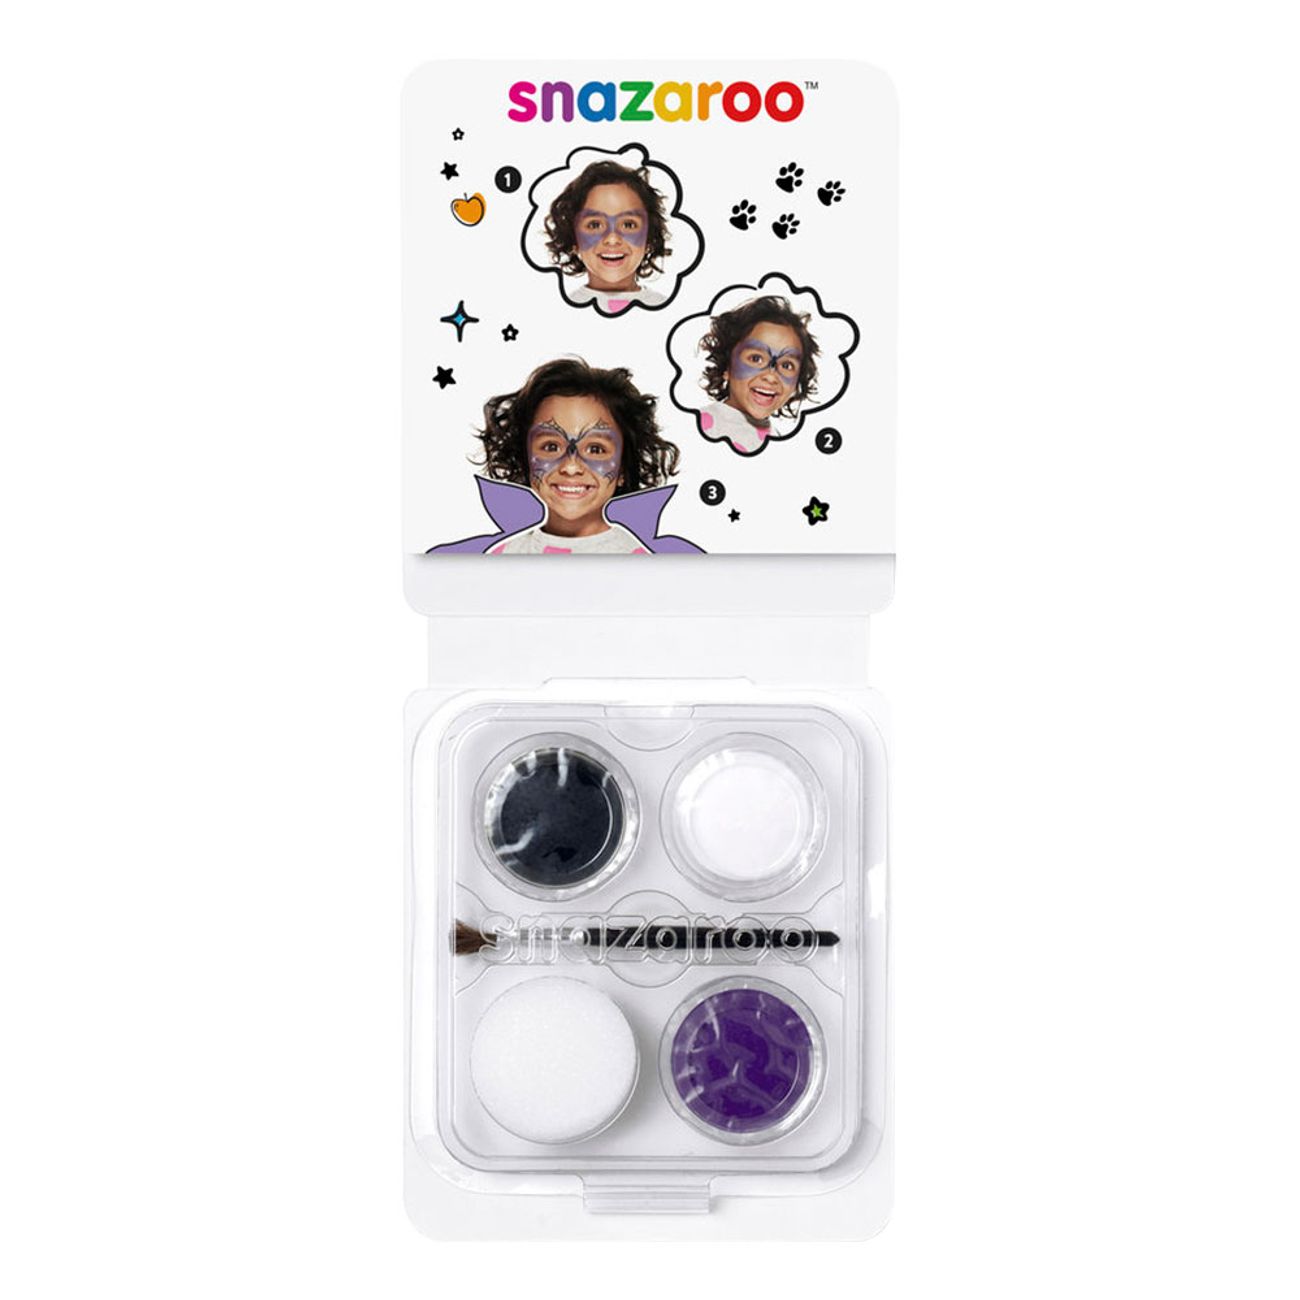 snazaroo-ansiktsfargset-mini-haxa-88639-1